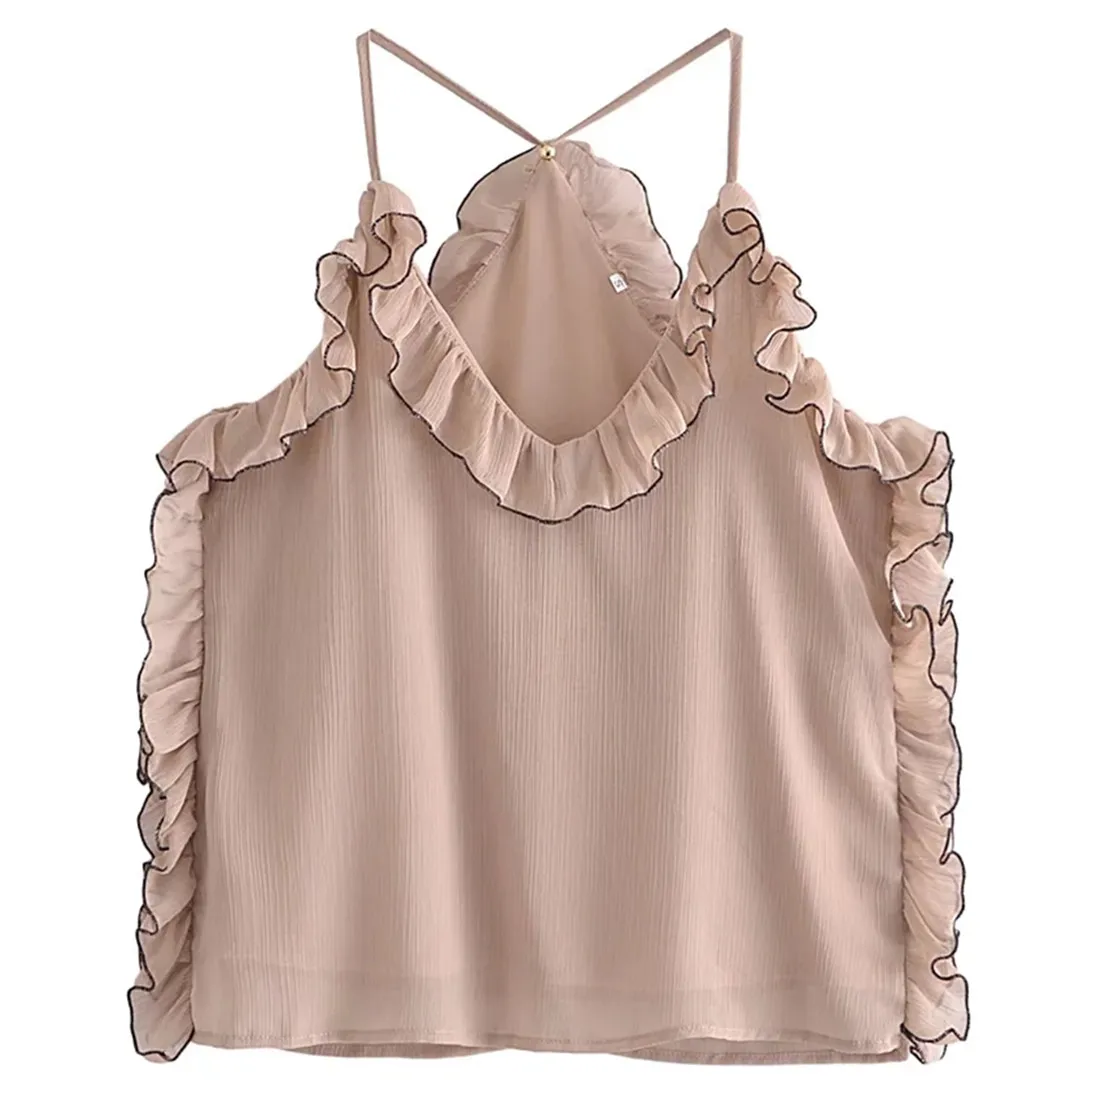 

Женская блузка с открытыми плечами Jenny & Dave, элегантная винтажная шифоновая блузка в английском стиле без бретелек, с оборками, лето 2022